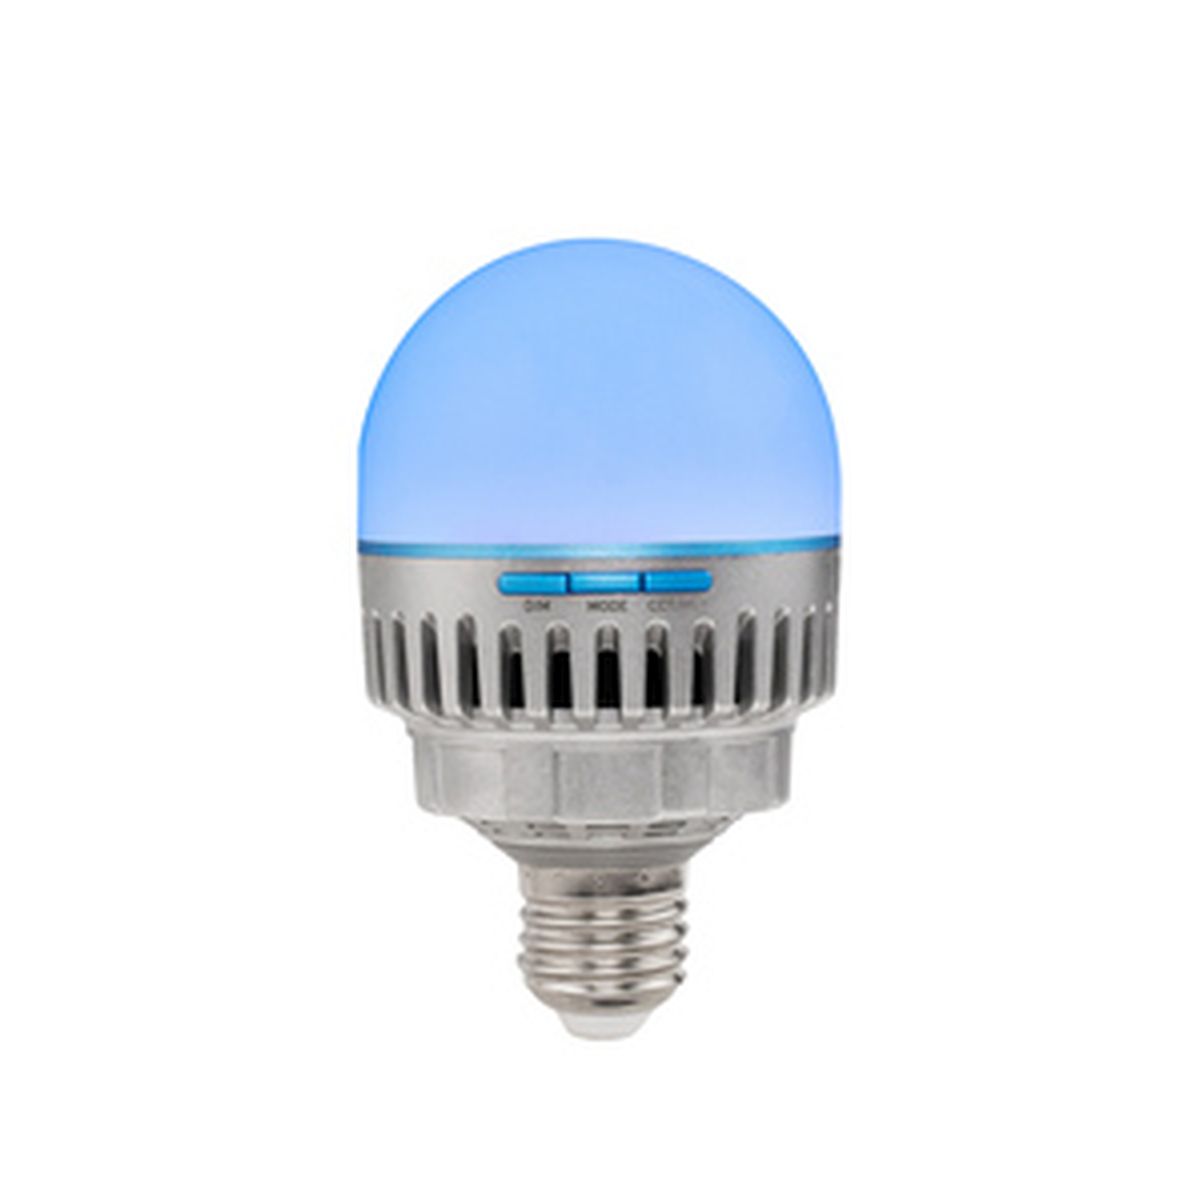 Nanlite Pavo Bulb 10C 1er Kit RGBWW Farb-Effektleuchte, E27-Gewinde